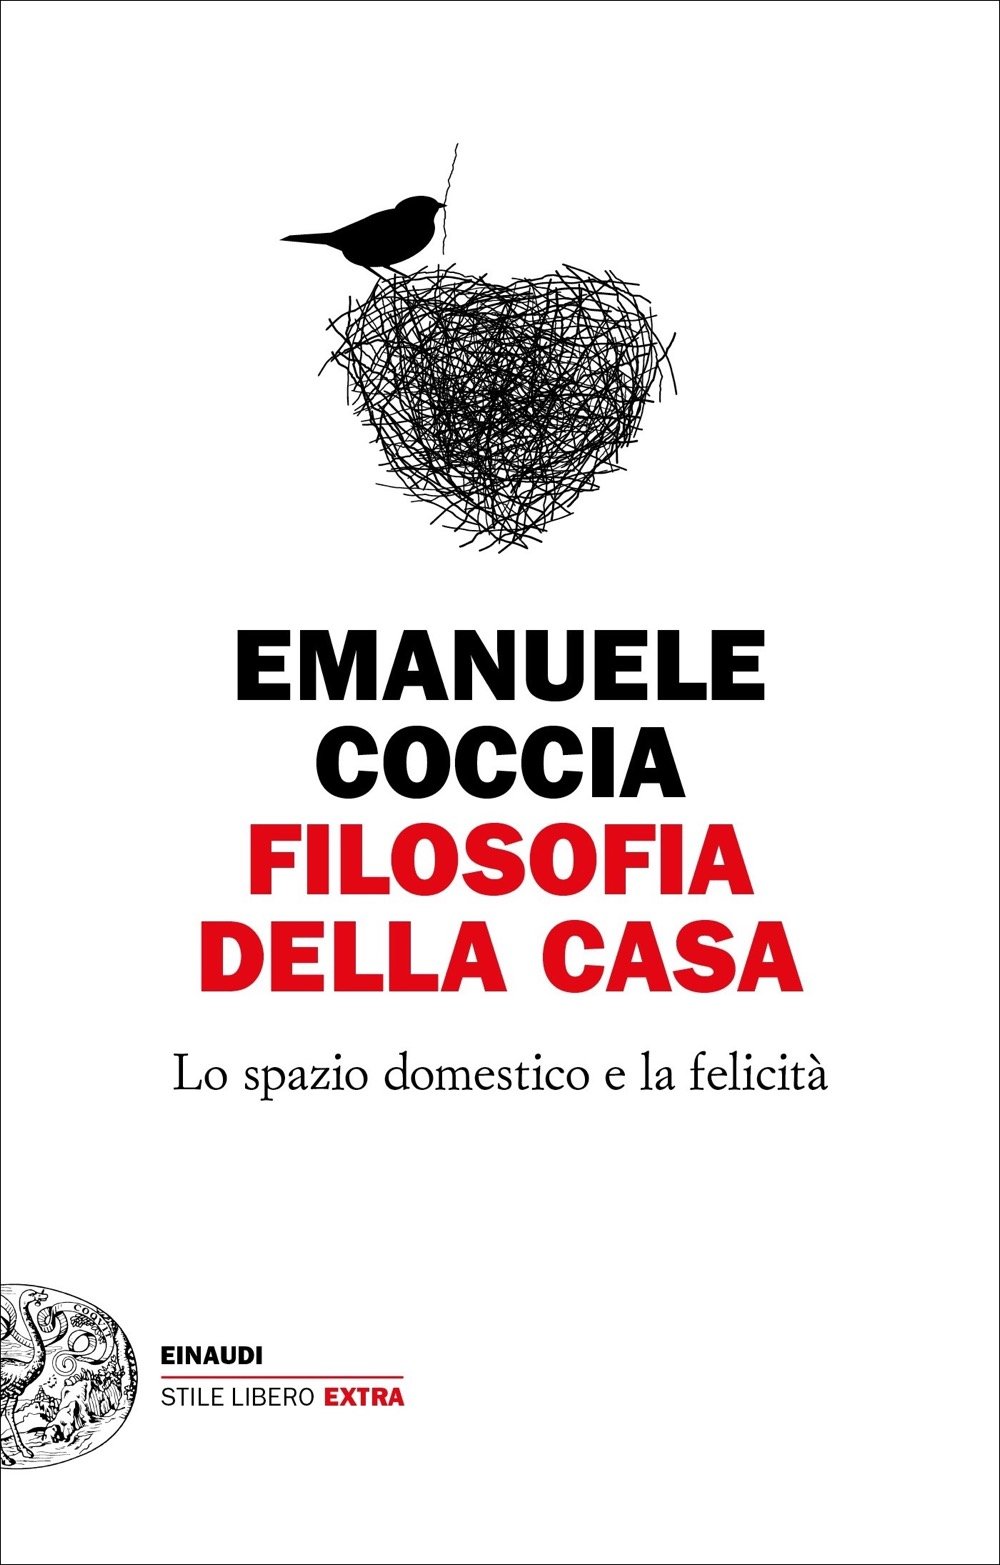 Emanuele Coccia, Filosofia della casa, Einaudi, Torino 2021